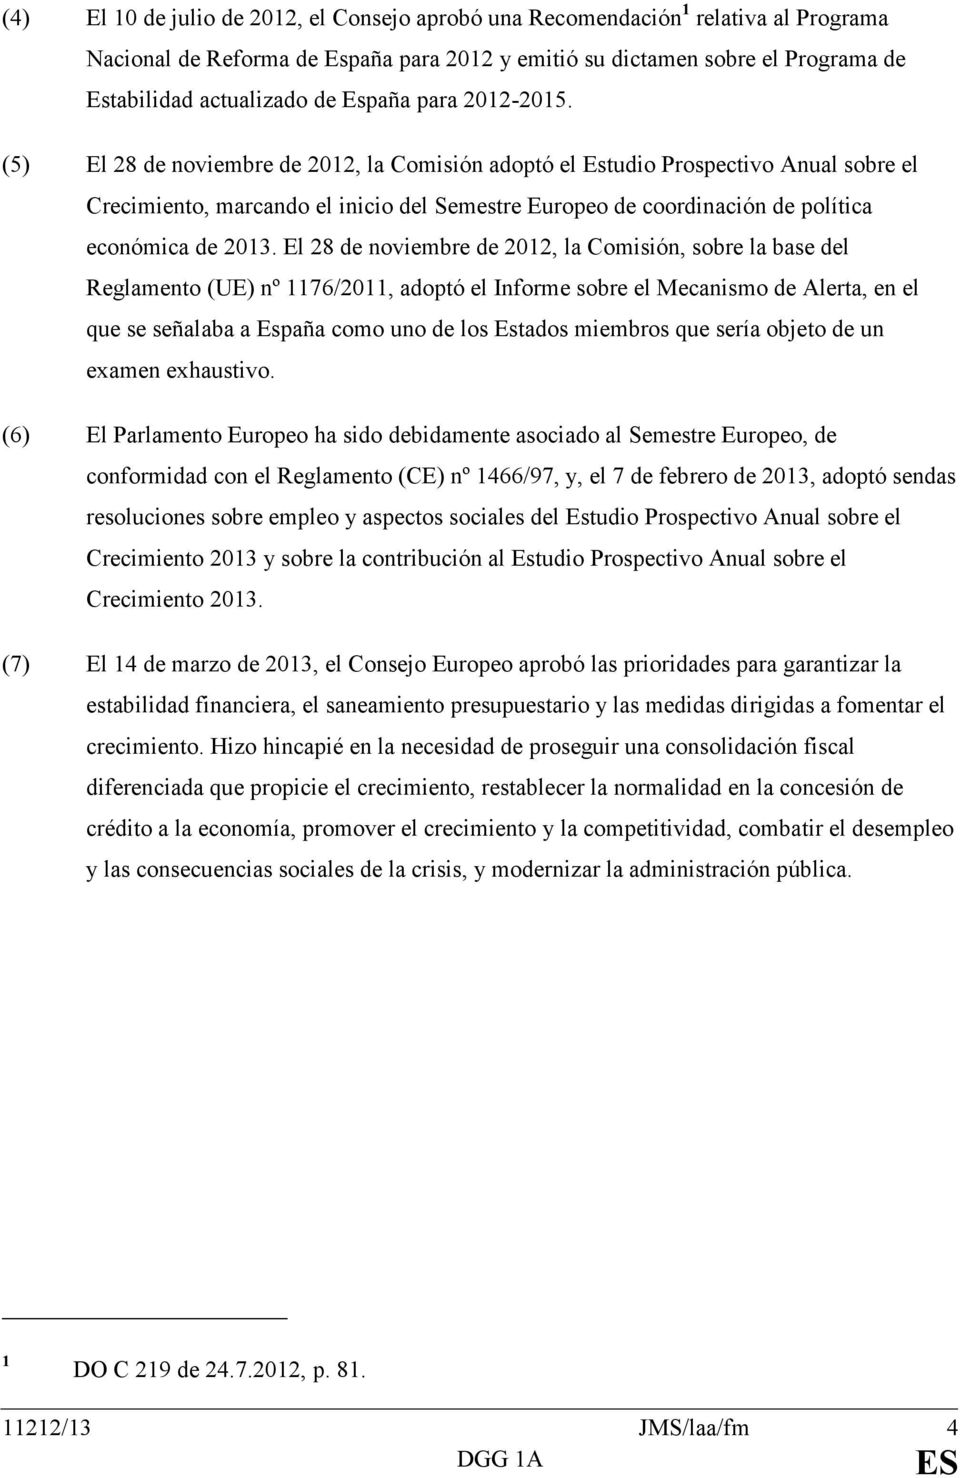 (5) El 28 de noviembre de 2012, la Comisión adoptó el Estudio Prospectivo Anual sobre el Crecimiento, marcando el inicio del Semestre Europeo de coordinación de política económica de 2013.